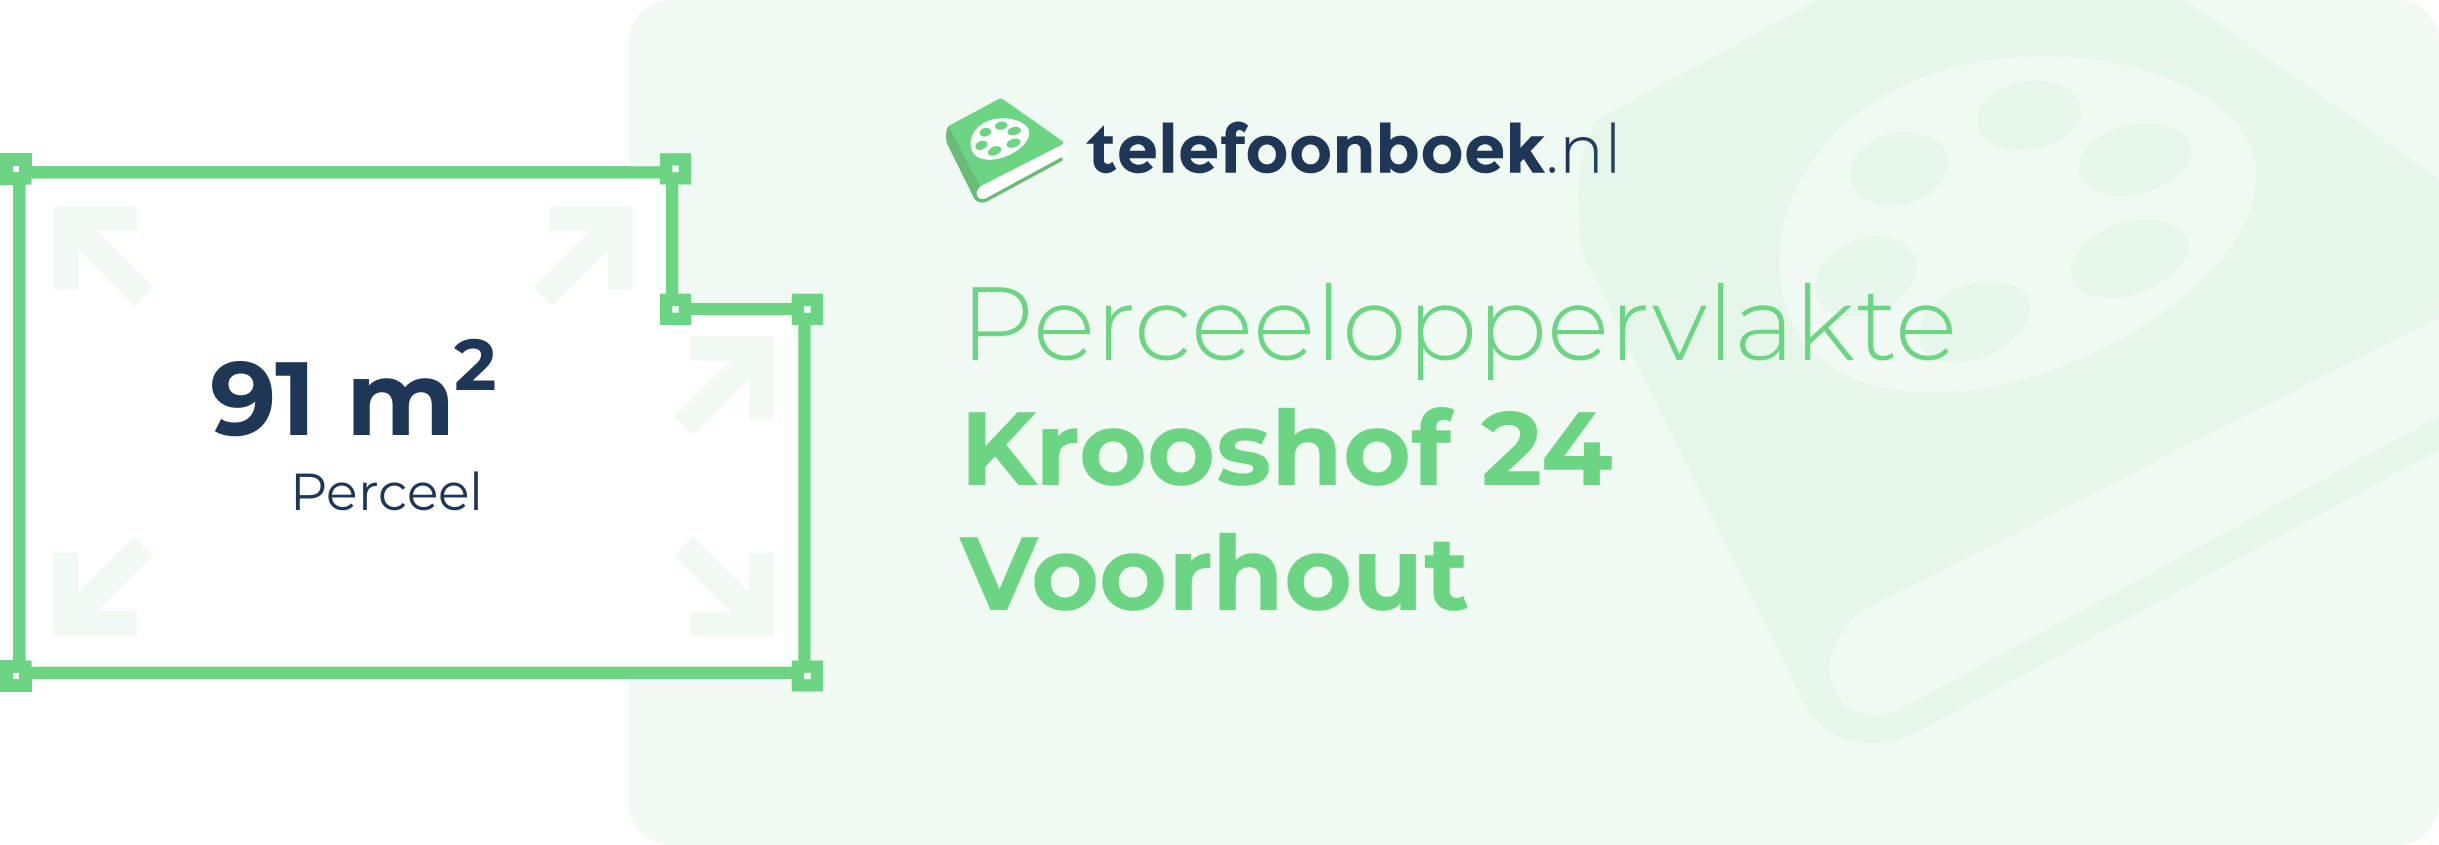 Perceeloppervlakte Krooshof 24 Voorhout